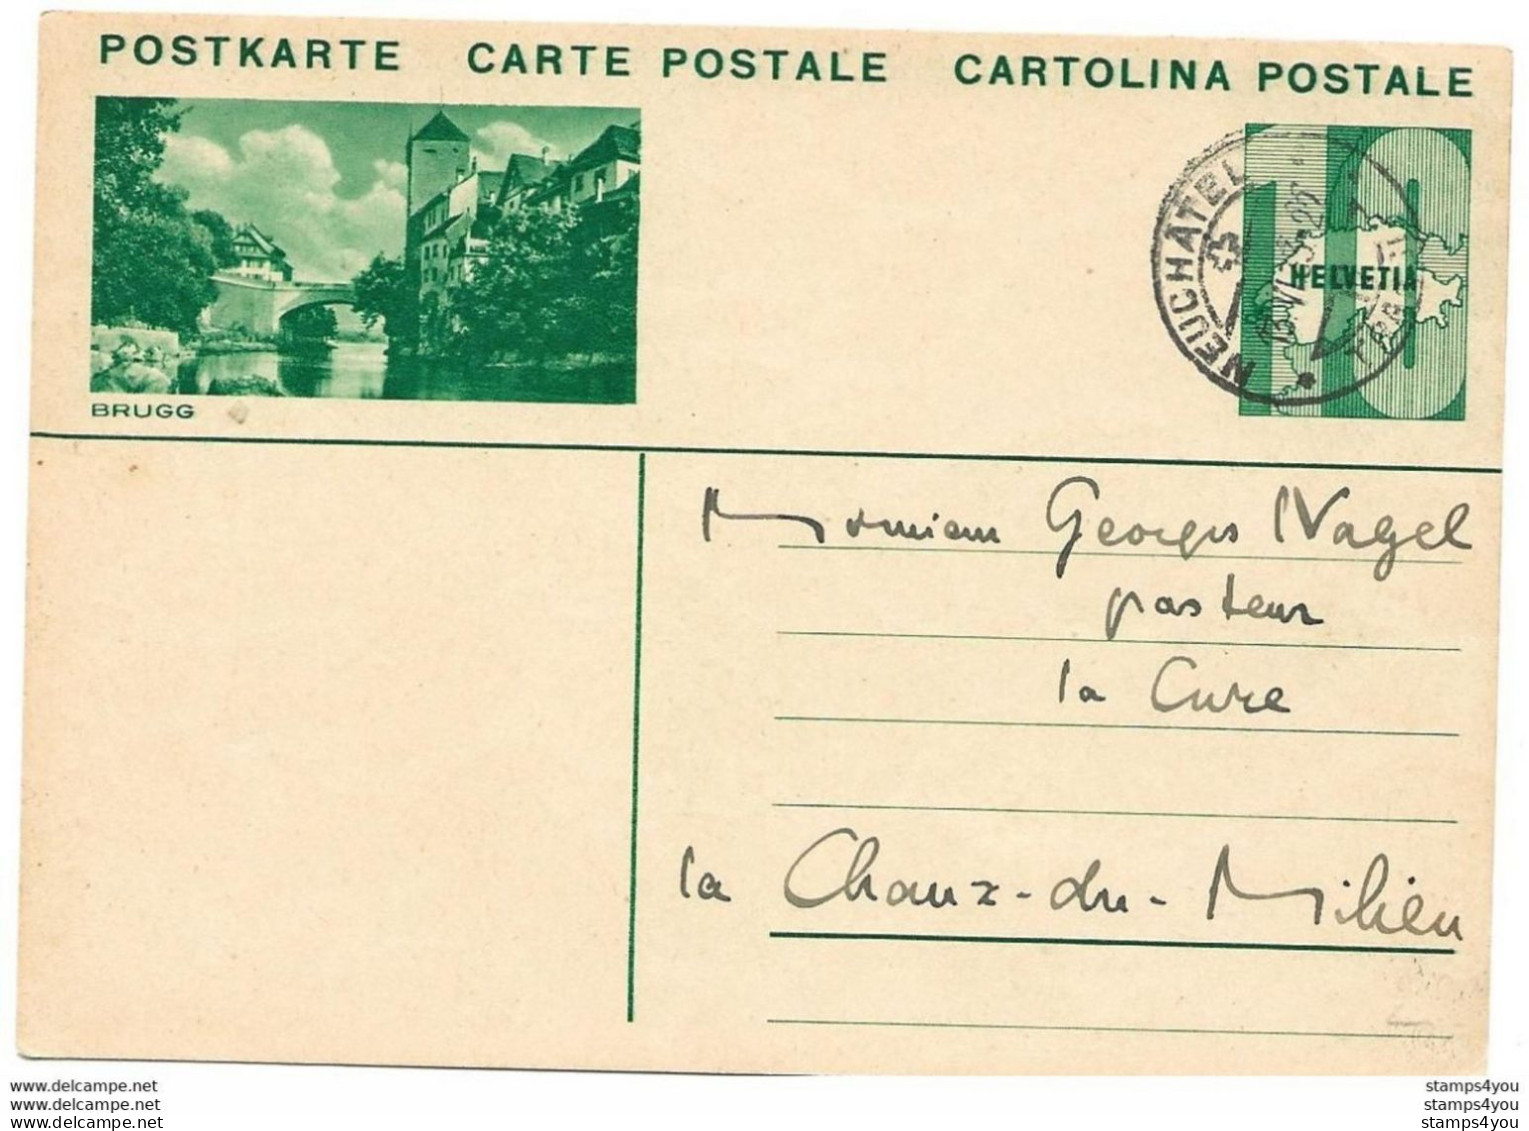 3 - 39 - Entier Postal Avec Illustration "Brugg" Avec Cachet à Date Neuchâtel 1933 - Ganzsachen